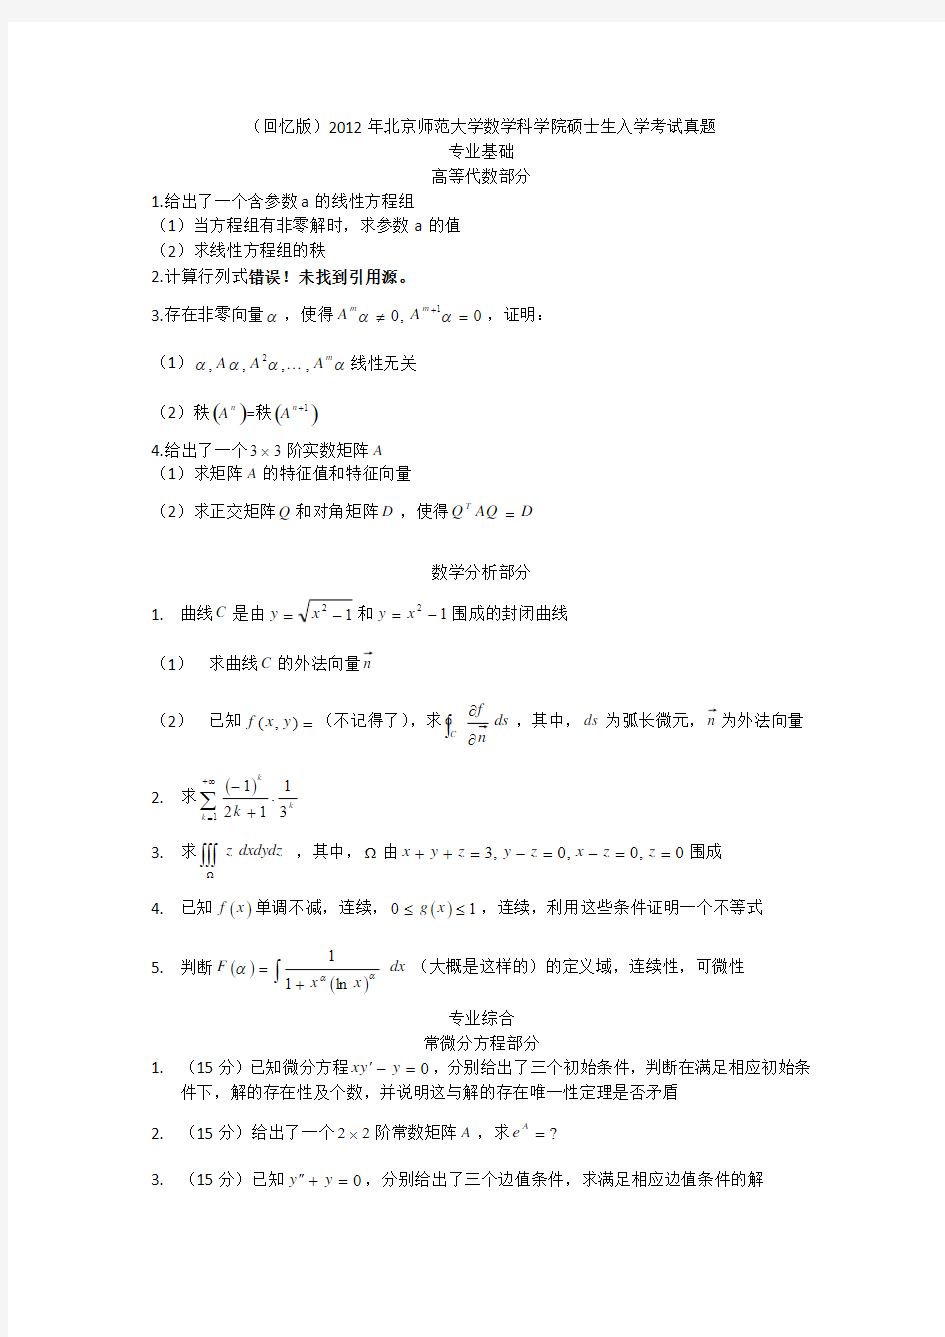 (回忆版)2012年北京师范大学数学科学院硕士生入学考试真题